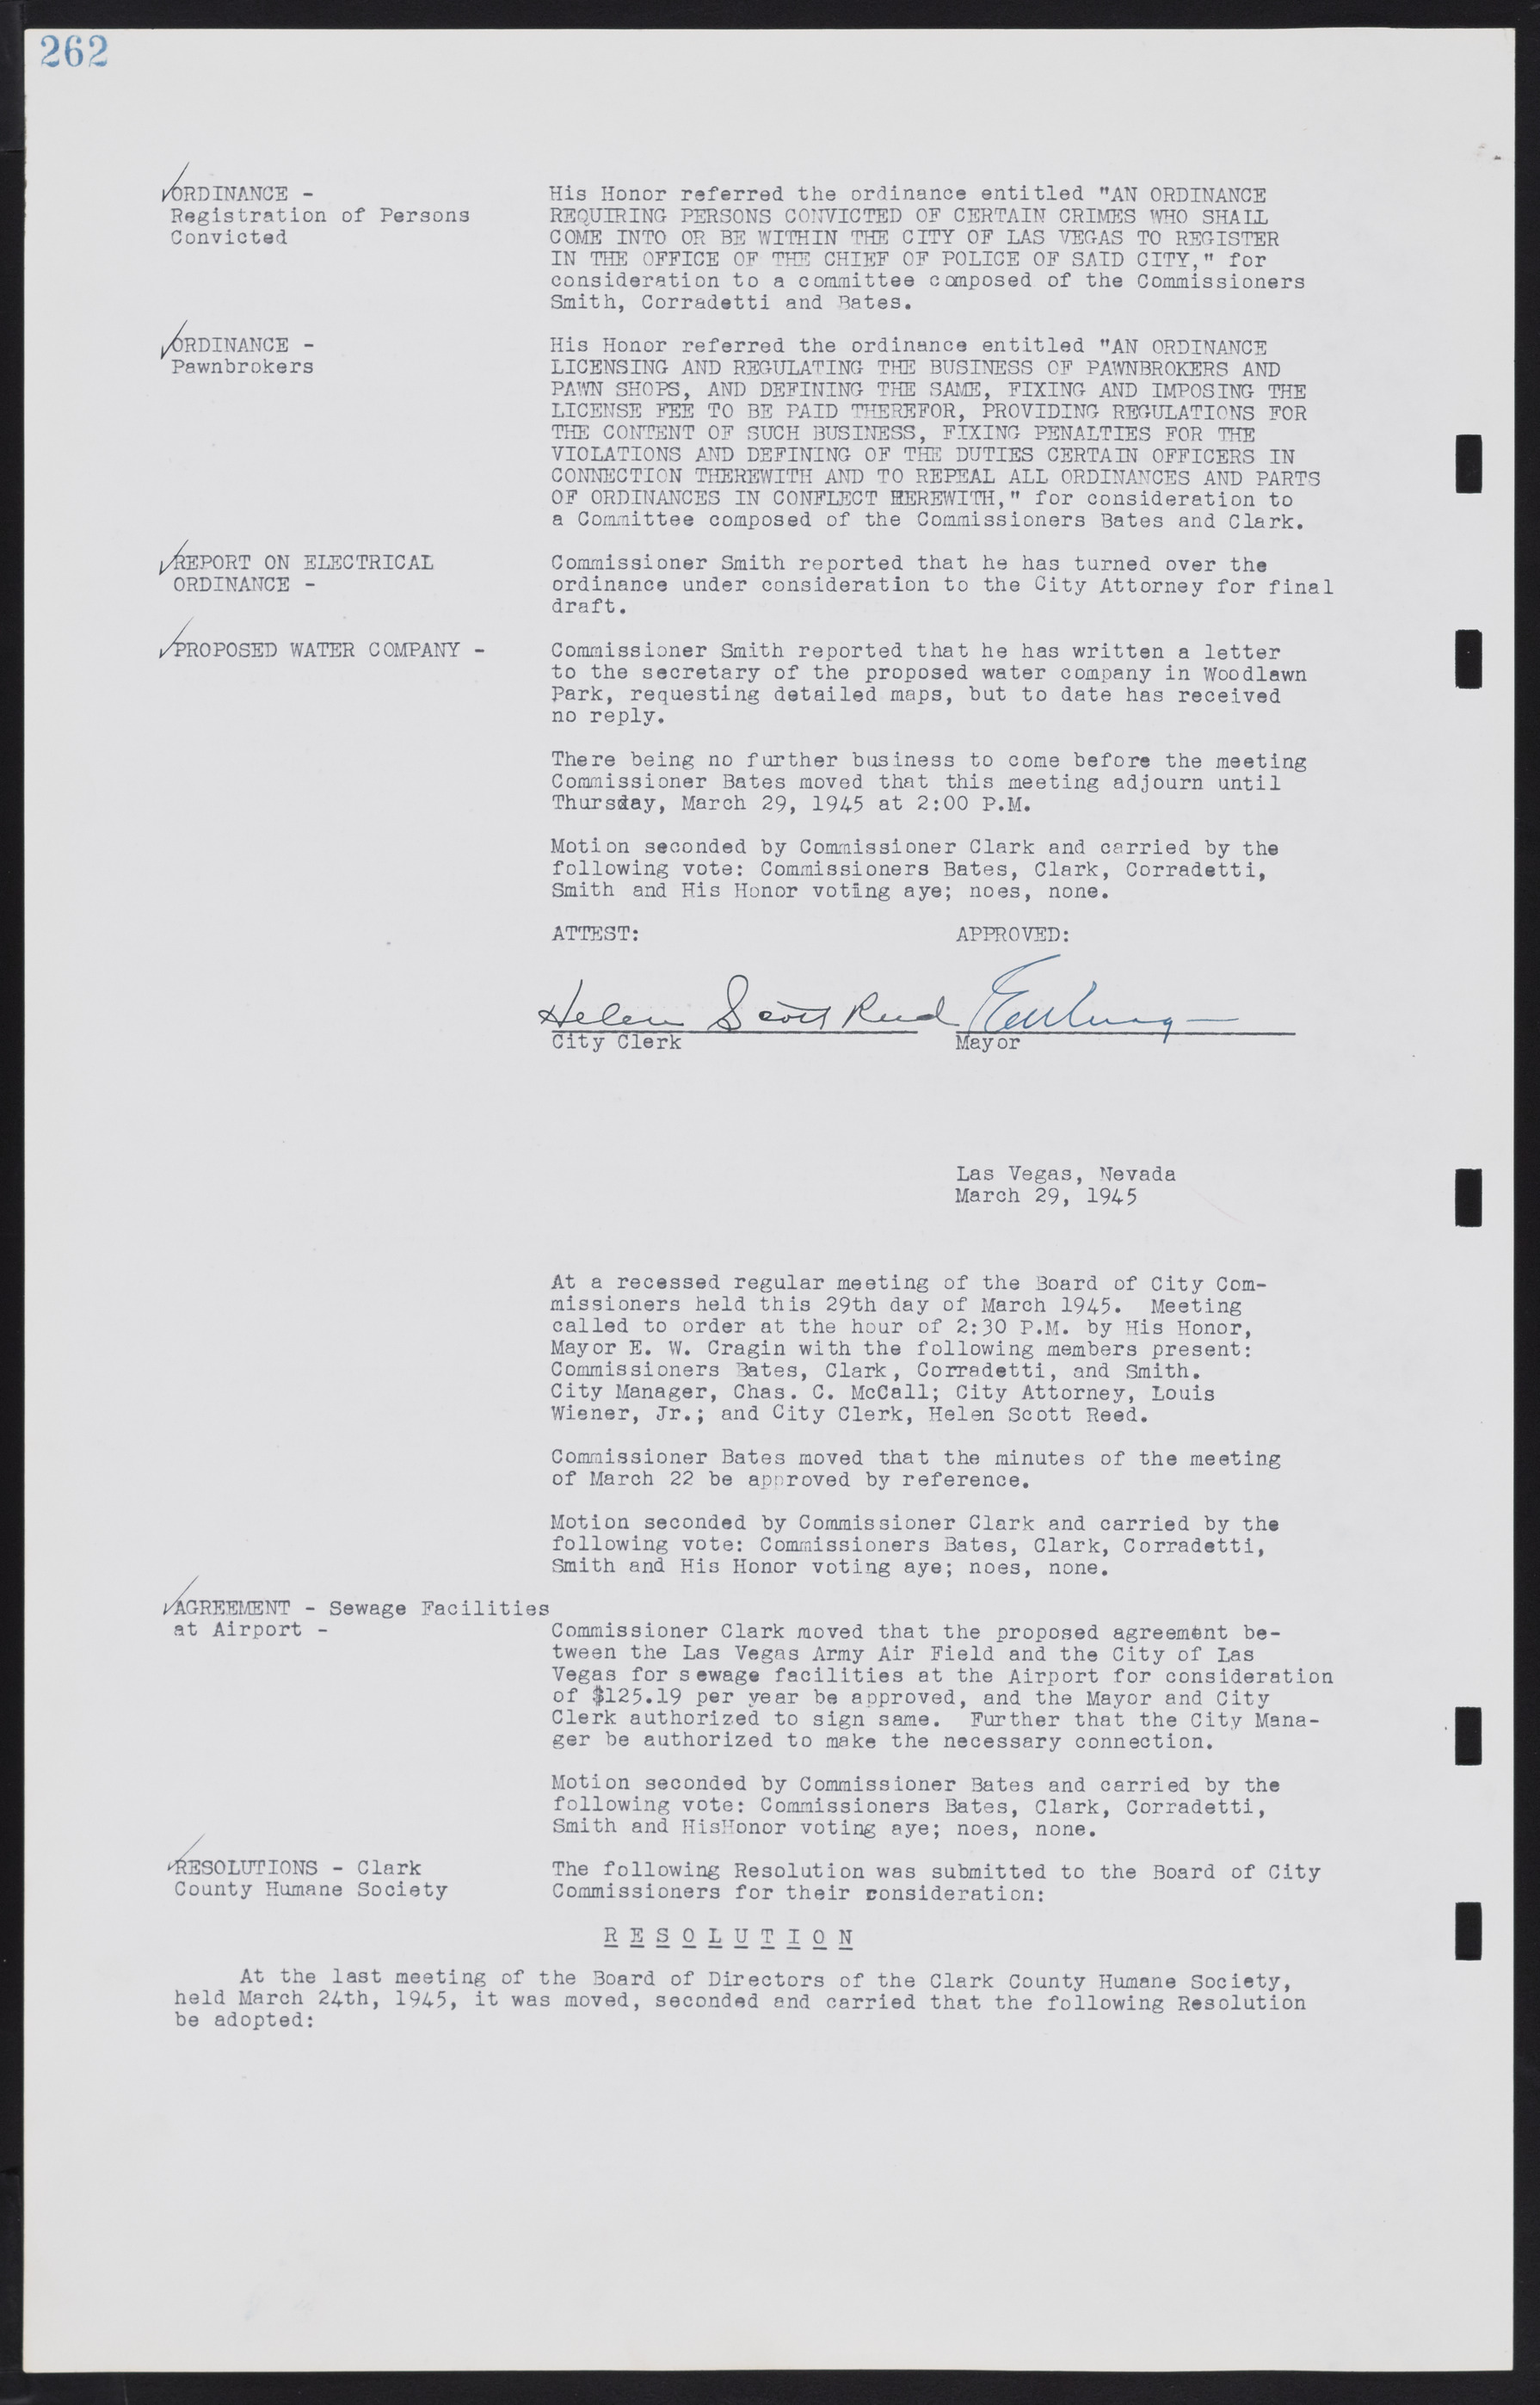 Las Vegas City Commission Minutes, August 11, 1942 to December 30, 1946, lvc000005-284